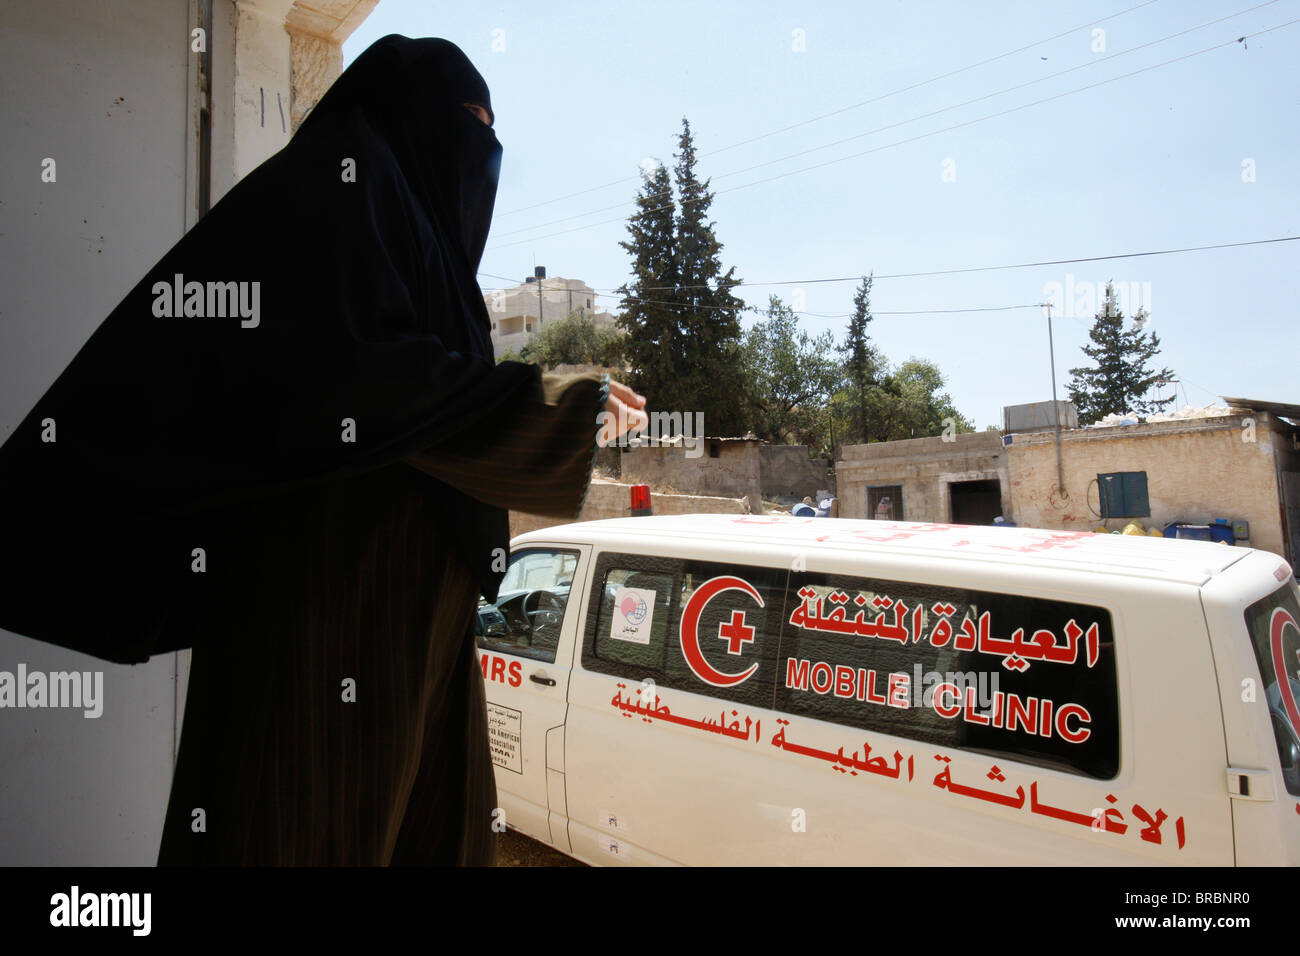 Ärzte für Menschenrechte mobile Klinik in der West Bank, Souk Ba, Palästinensische Autonomiegebiete Stockfoto